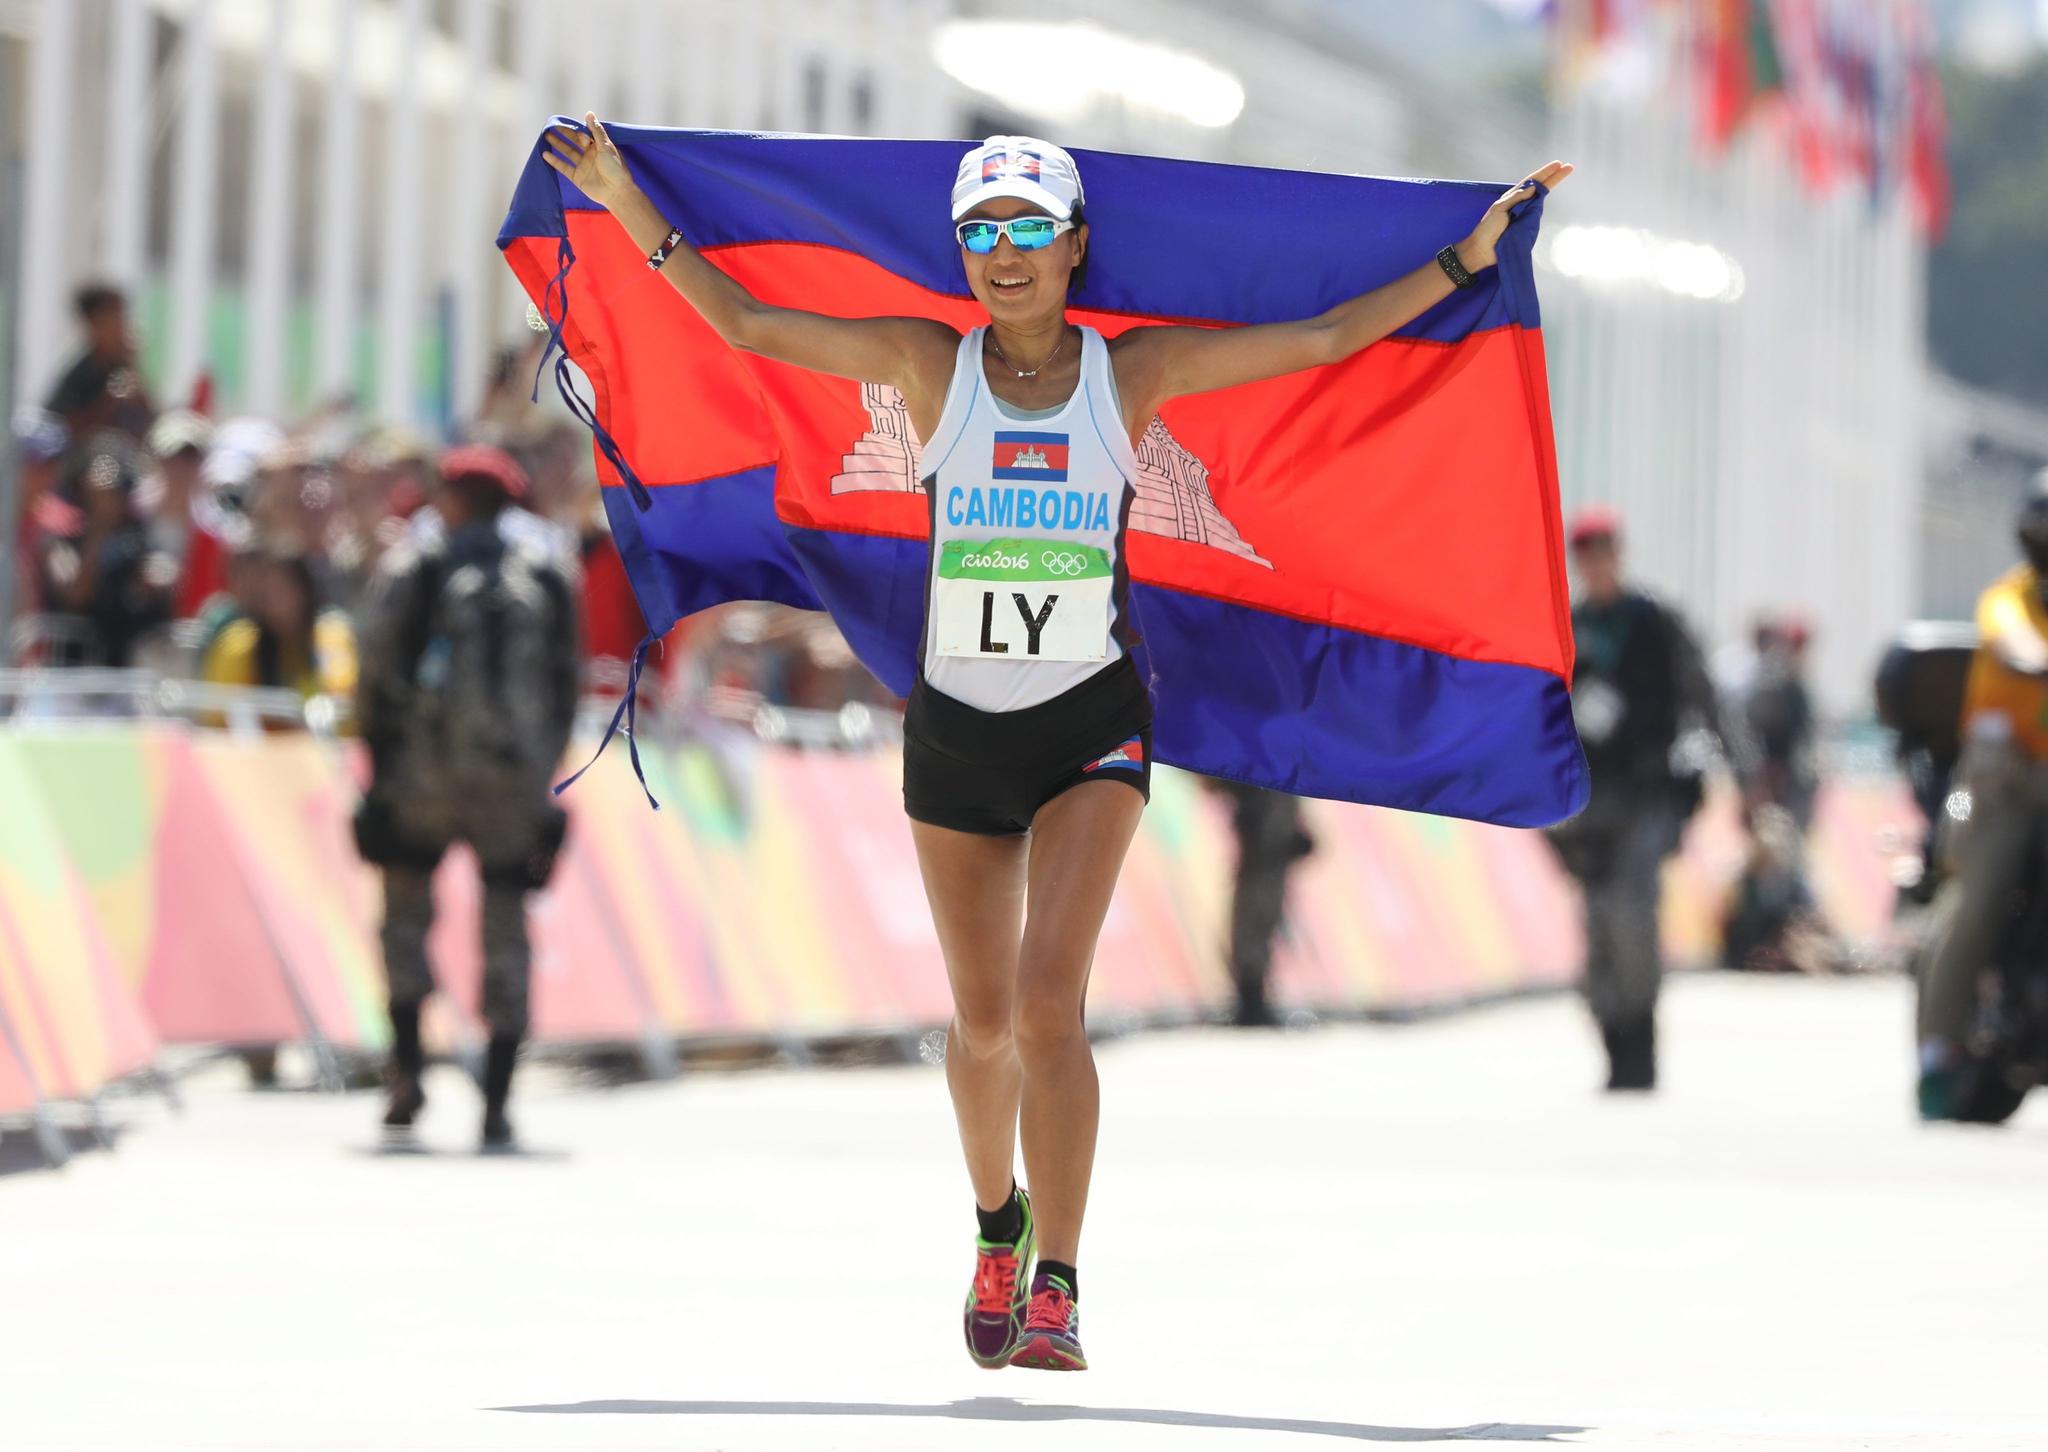 Nary Ly completa a maratona olímpica no Rio 2016: atleta cambojana lançou autobiografia no fim de 2021.